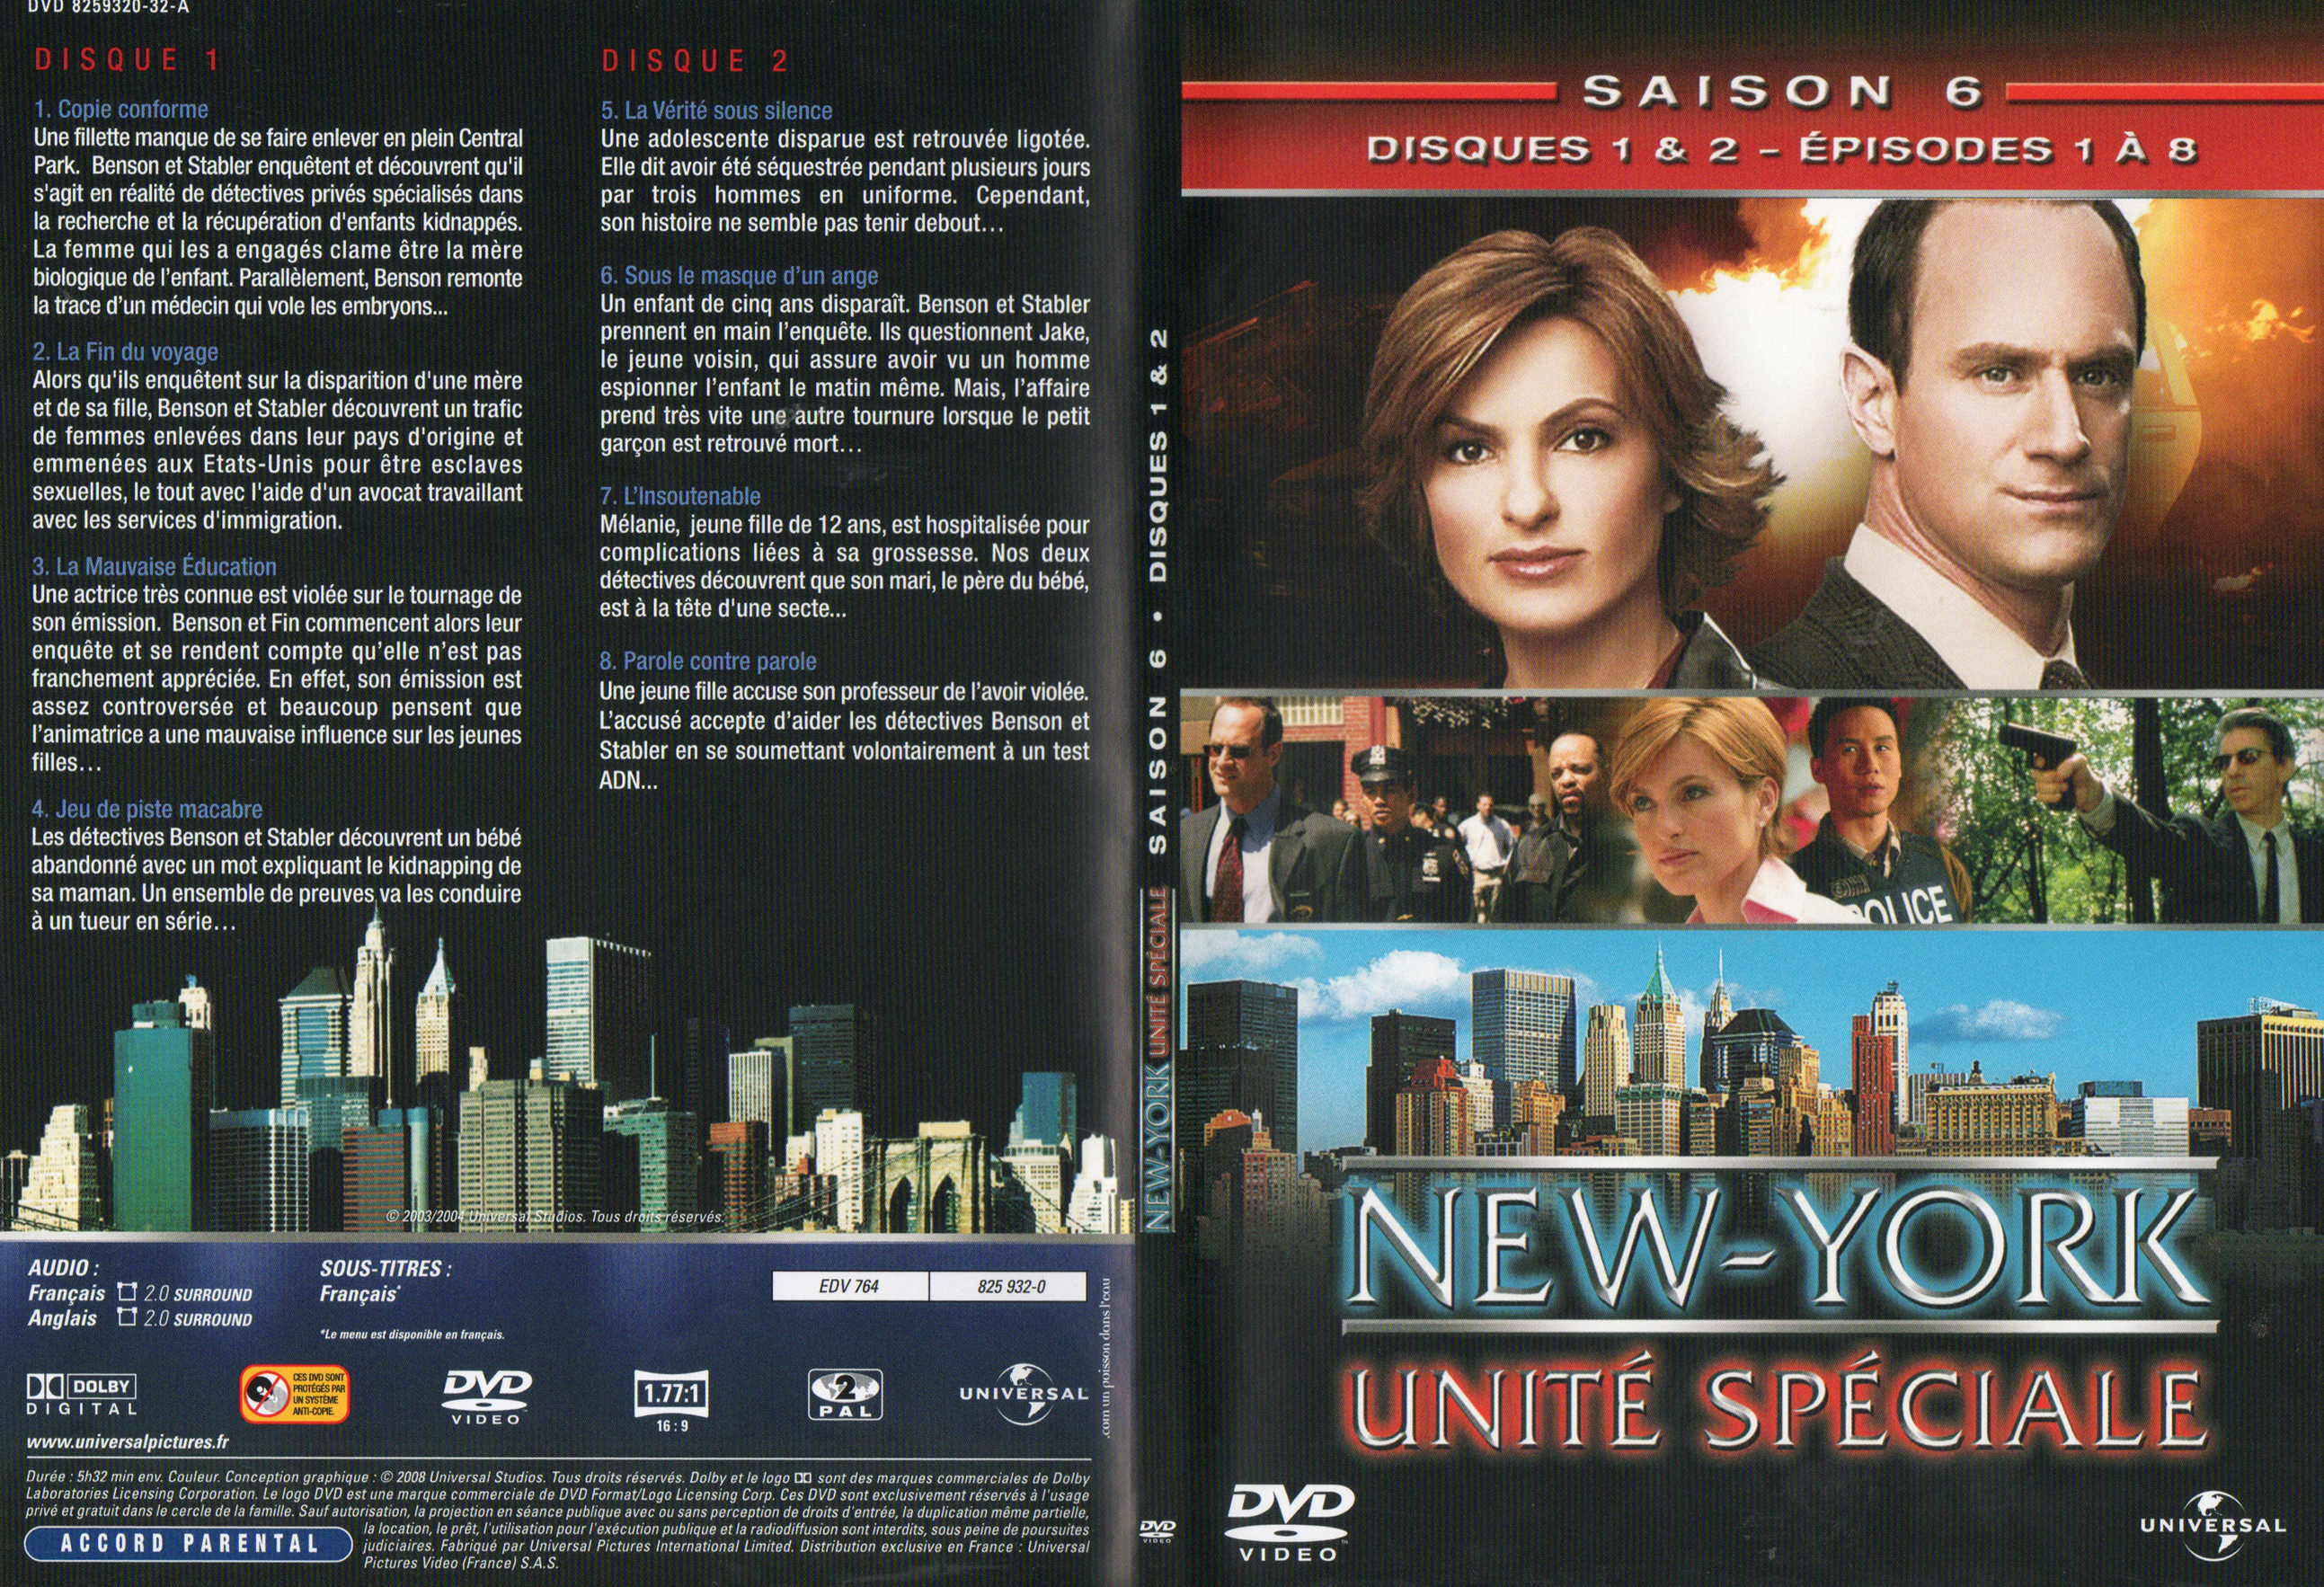 Jaquette DVD New York unit spciale saison 6 DVD 1